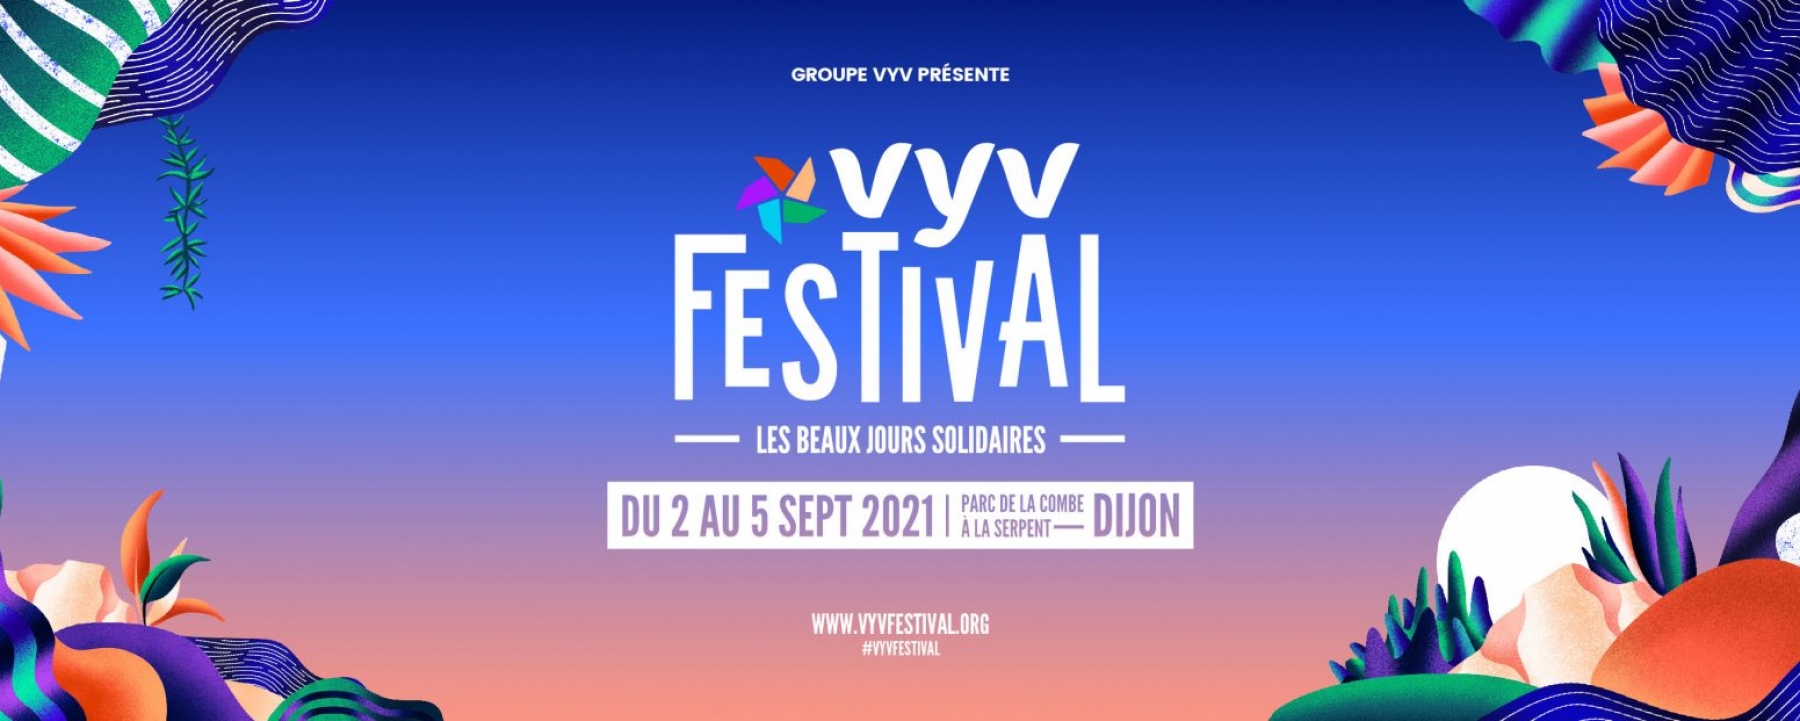 VYV Festival du 2 au 5 septembre 2021 à Dijon